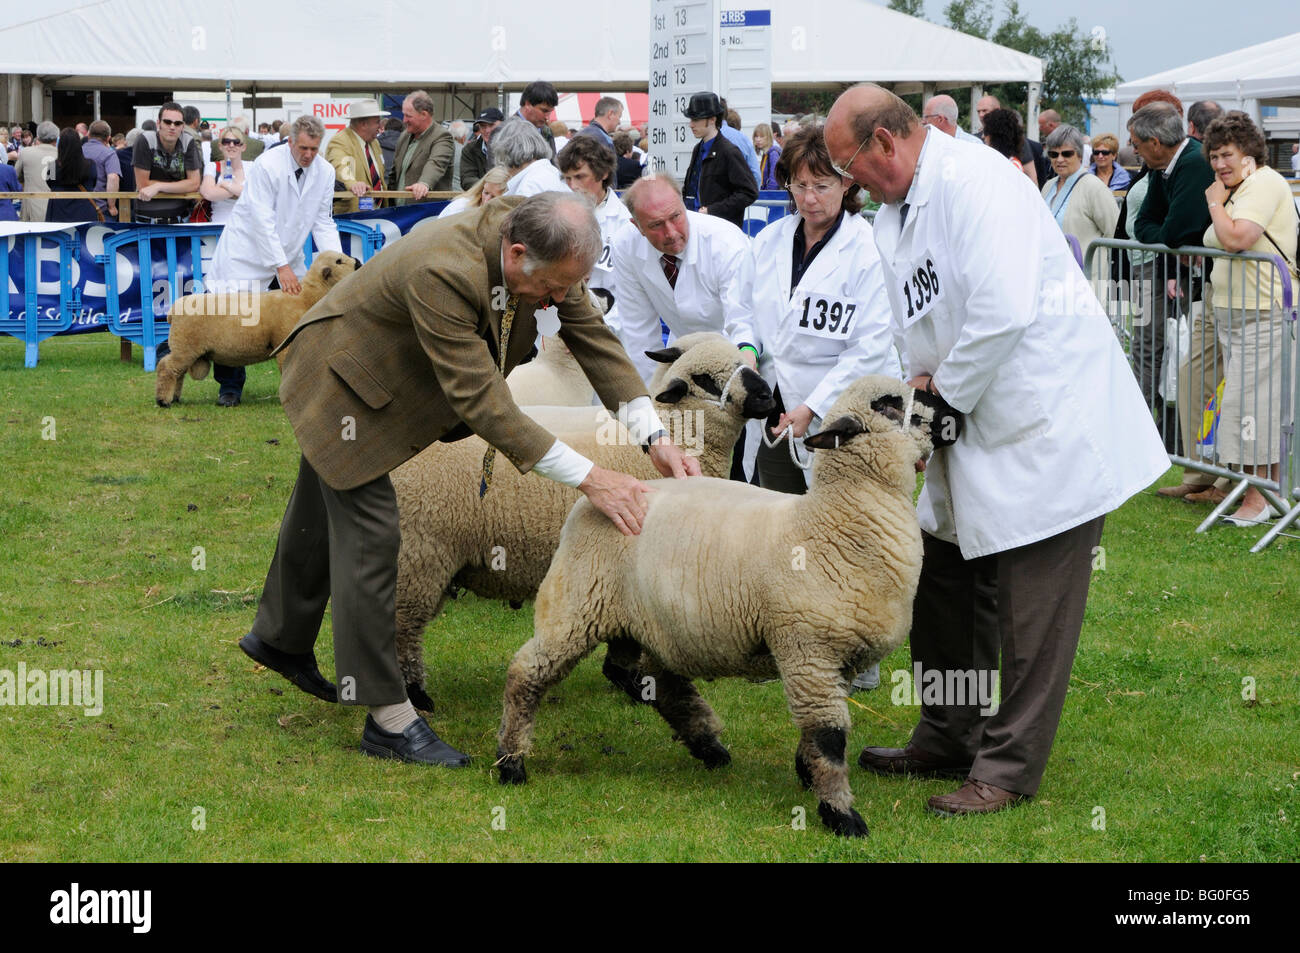 Moutons Hampshire Down étant jugés au 2009 Royal Highland Show, Édimbourg, Écosse, Royaume-Uni. Banque D'Images